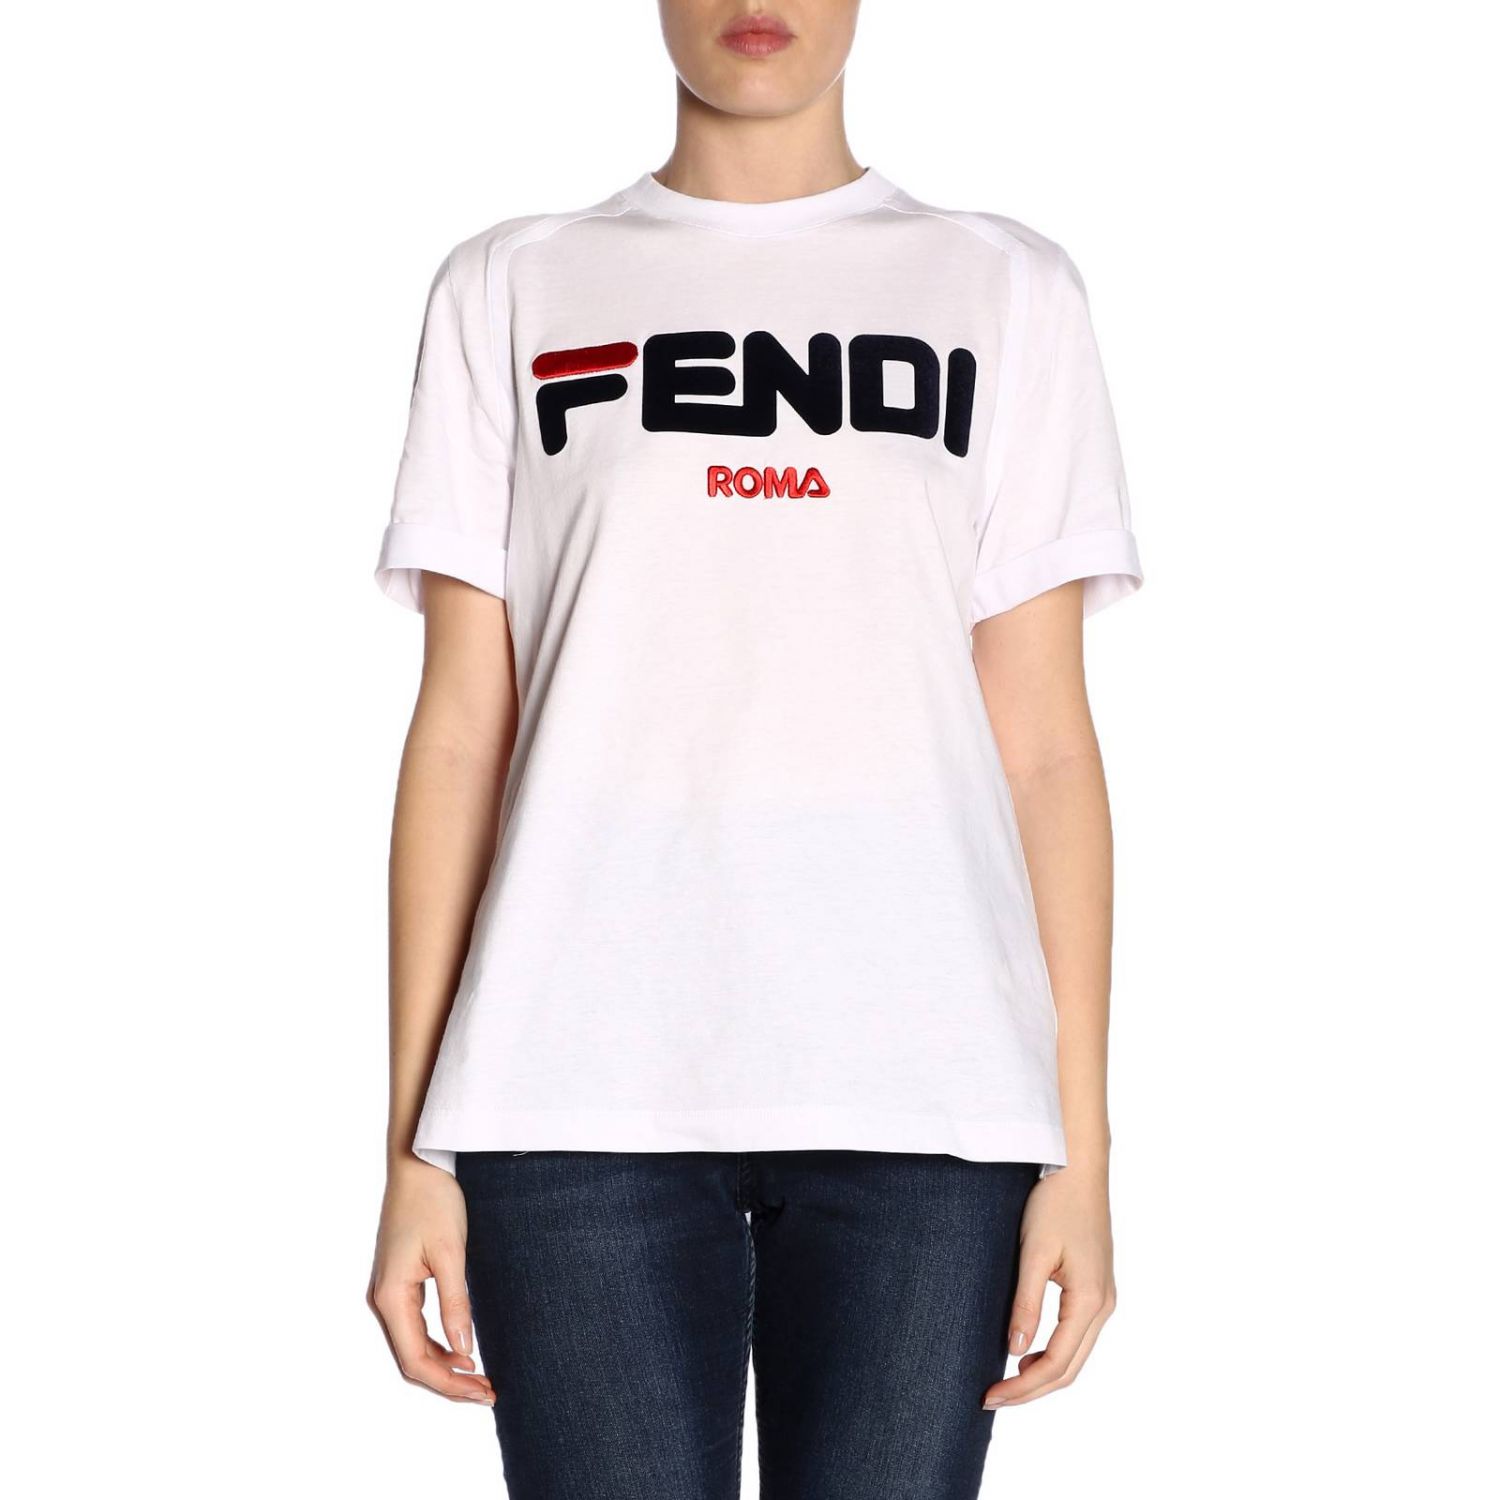 FENDI: T-shirt women | T-Shirt Fendi Women White | T-Shirt Fendi FS7074 ...